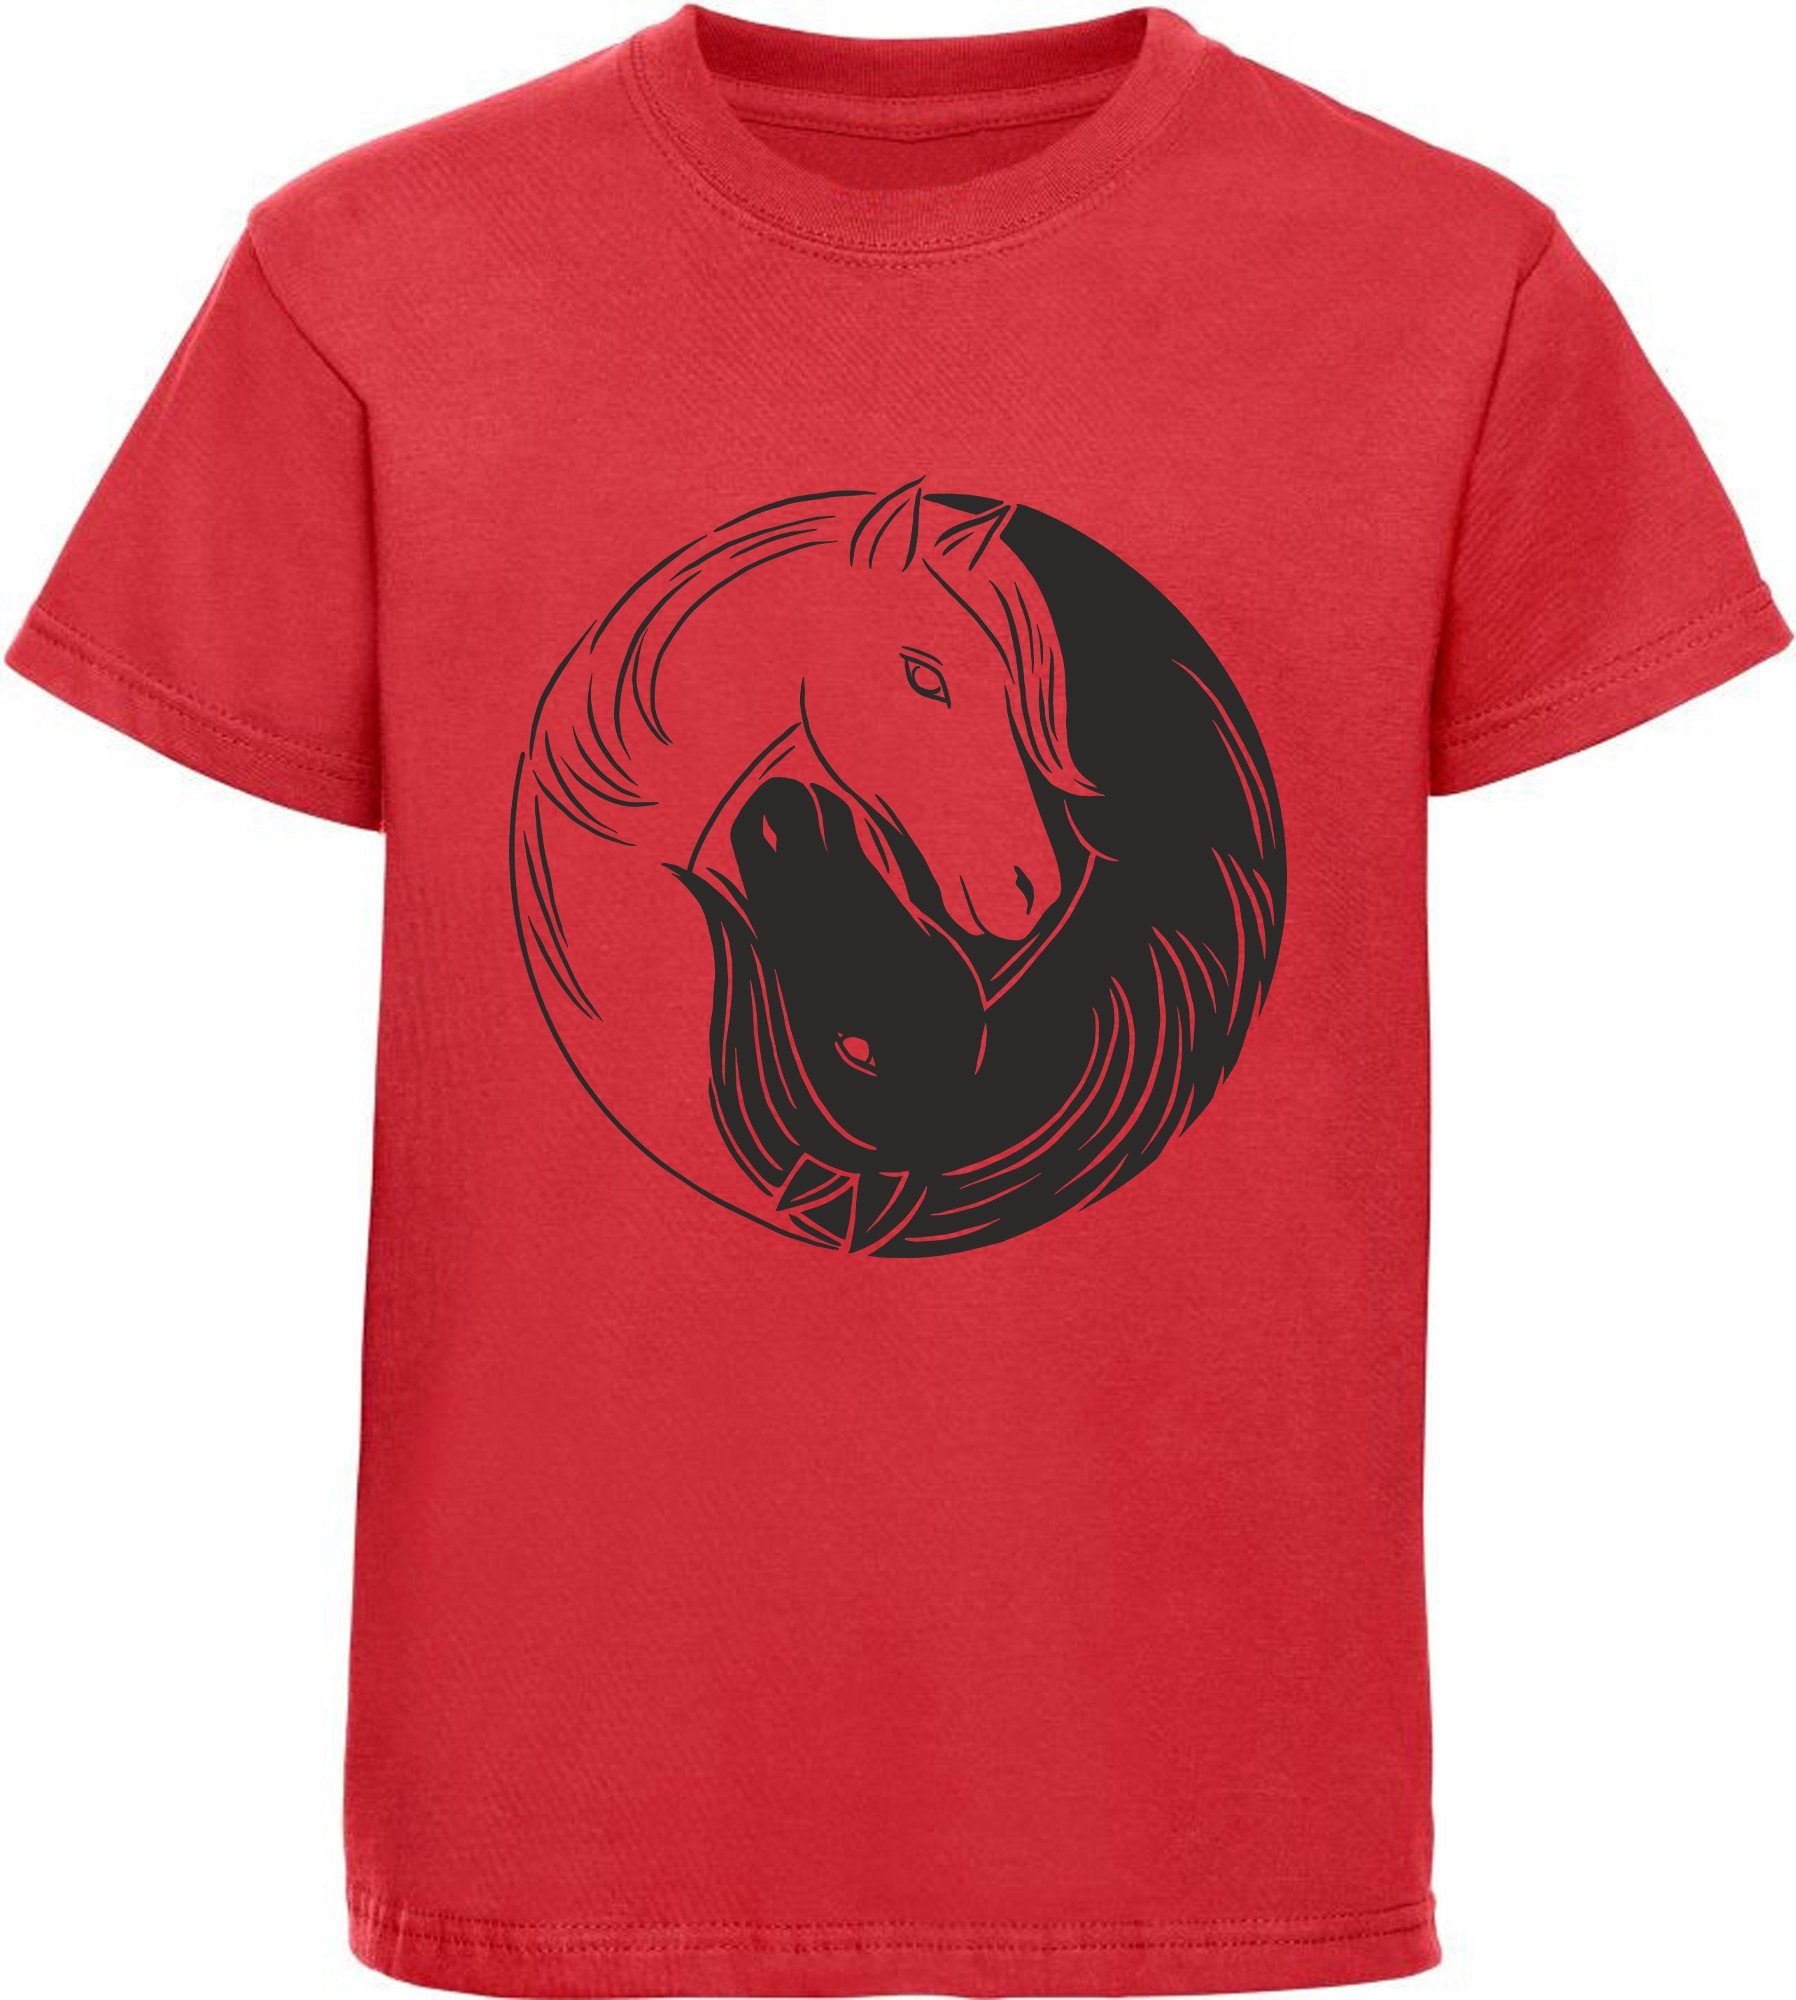 MyDesign24 Print-Shirt bedrucktes Mädchen T-Shirt Yin Yang Pferd Baumwollshirt mit Aufdruck, weiß, rot, rosa, i133